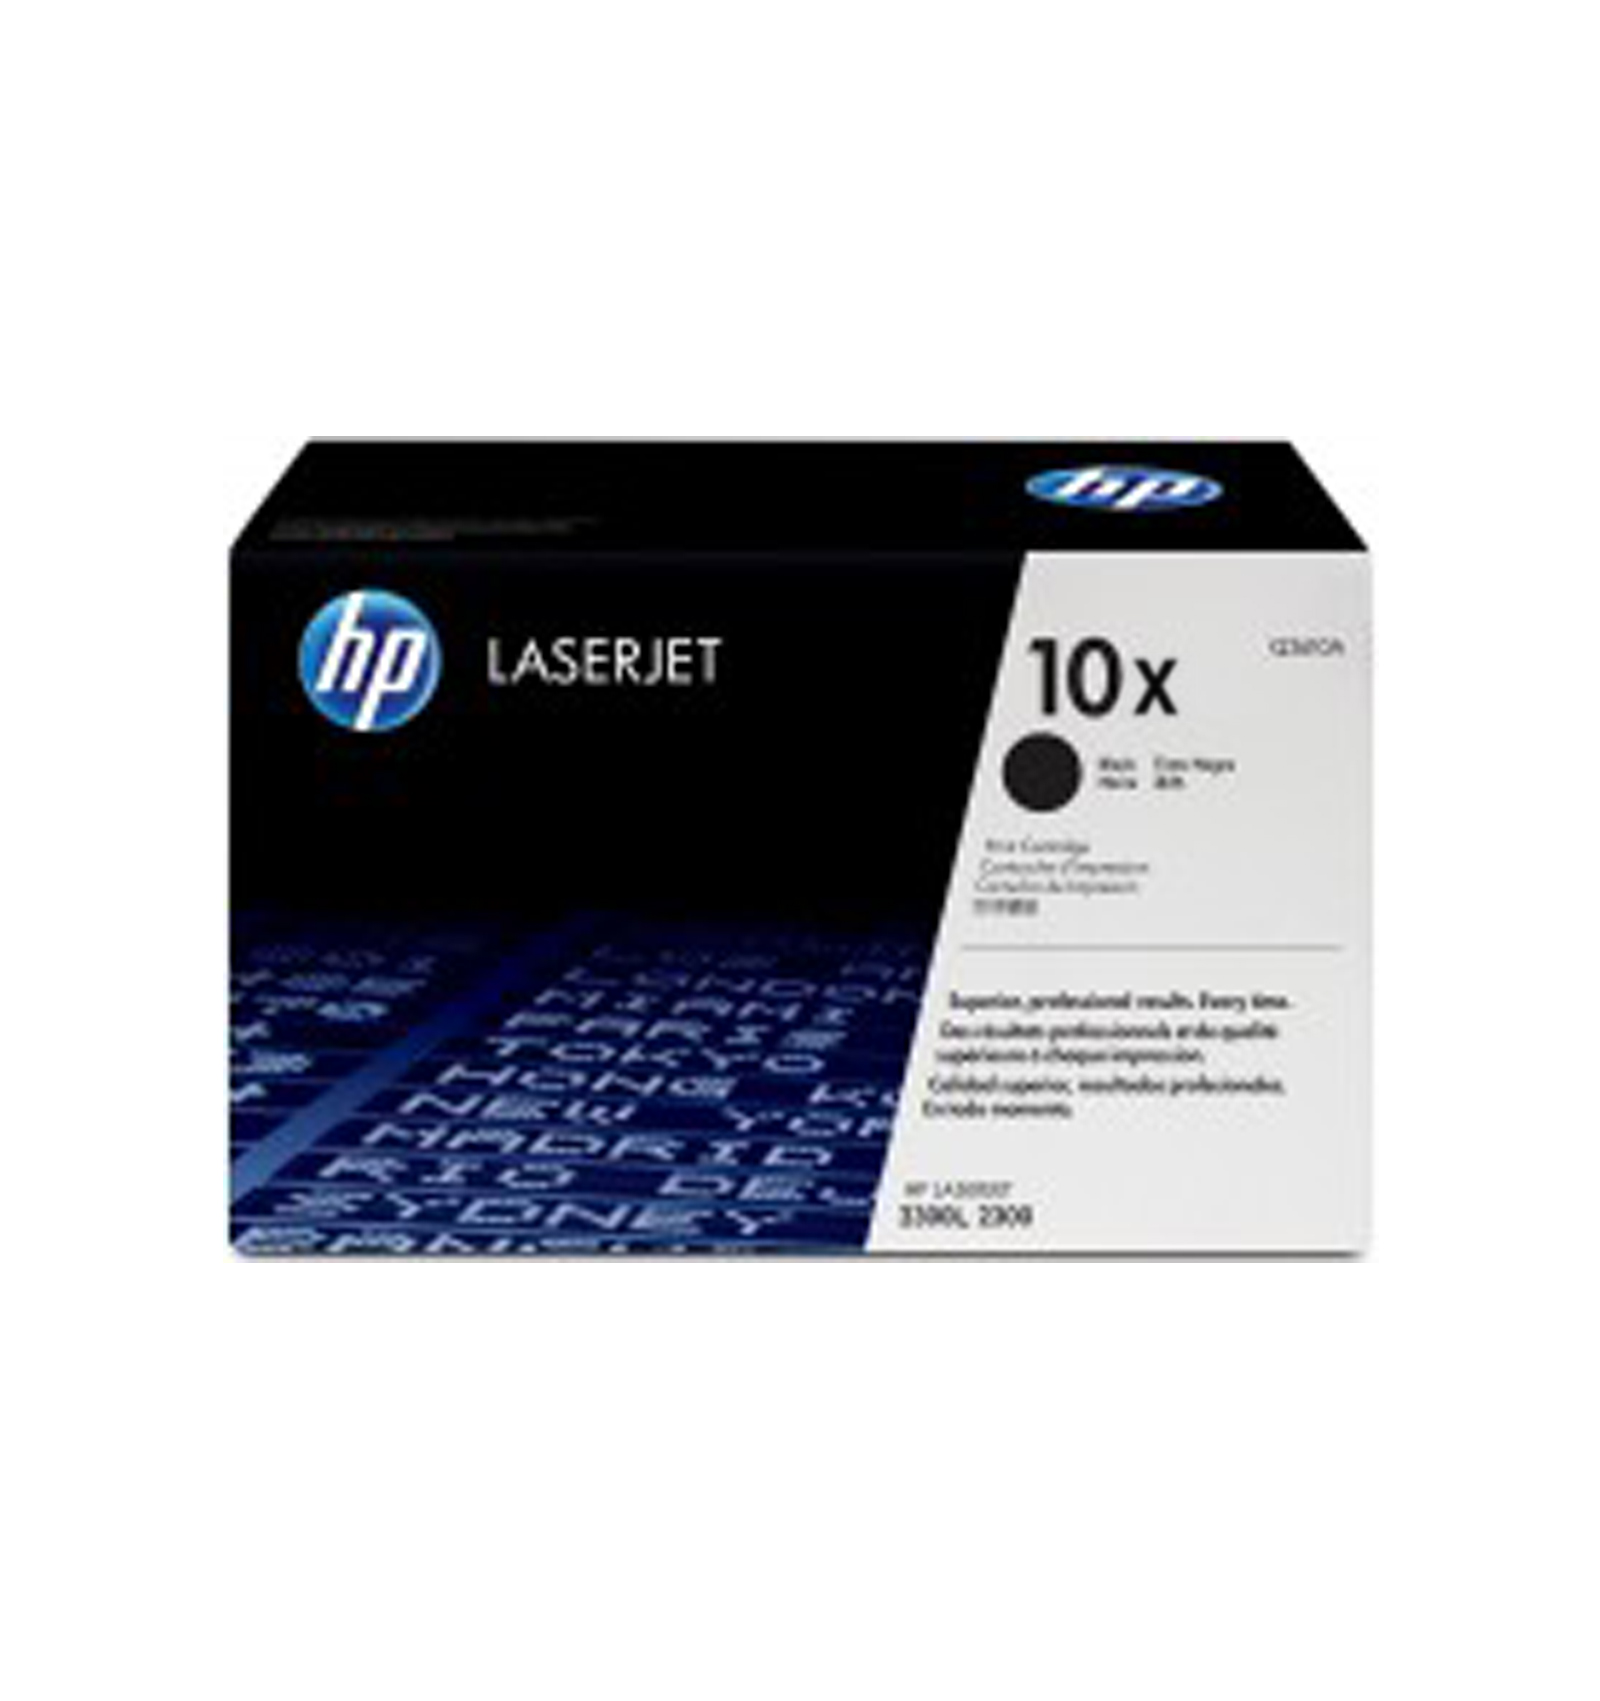 HP Q2610X (10X) для LaserJet 2300